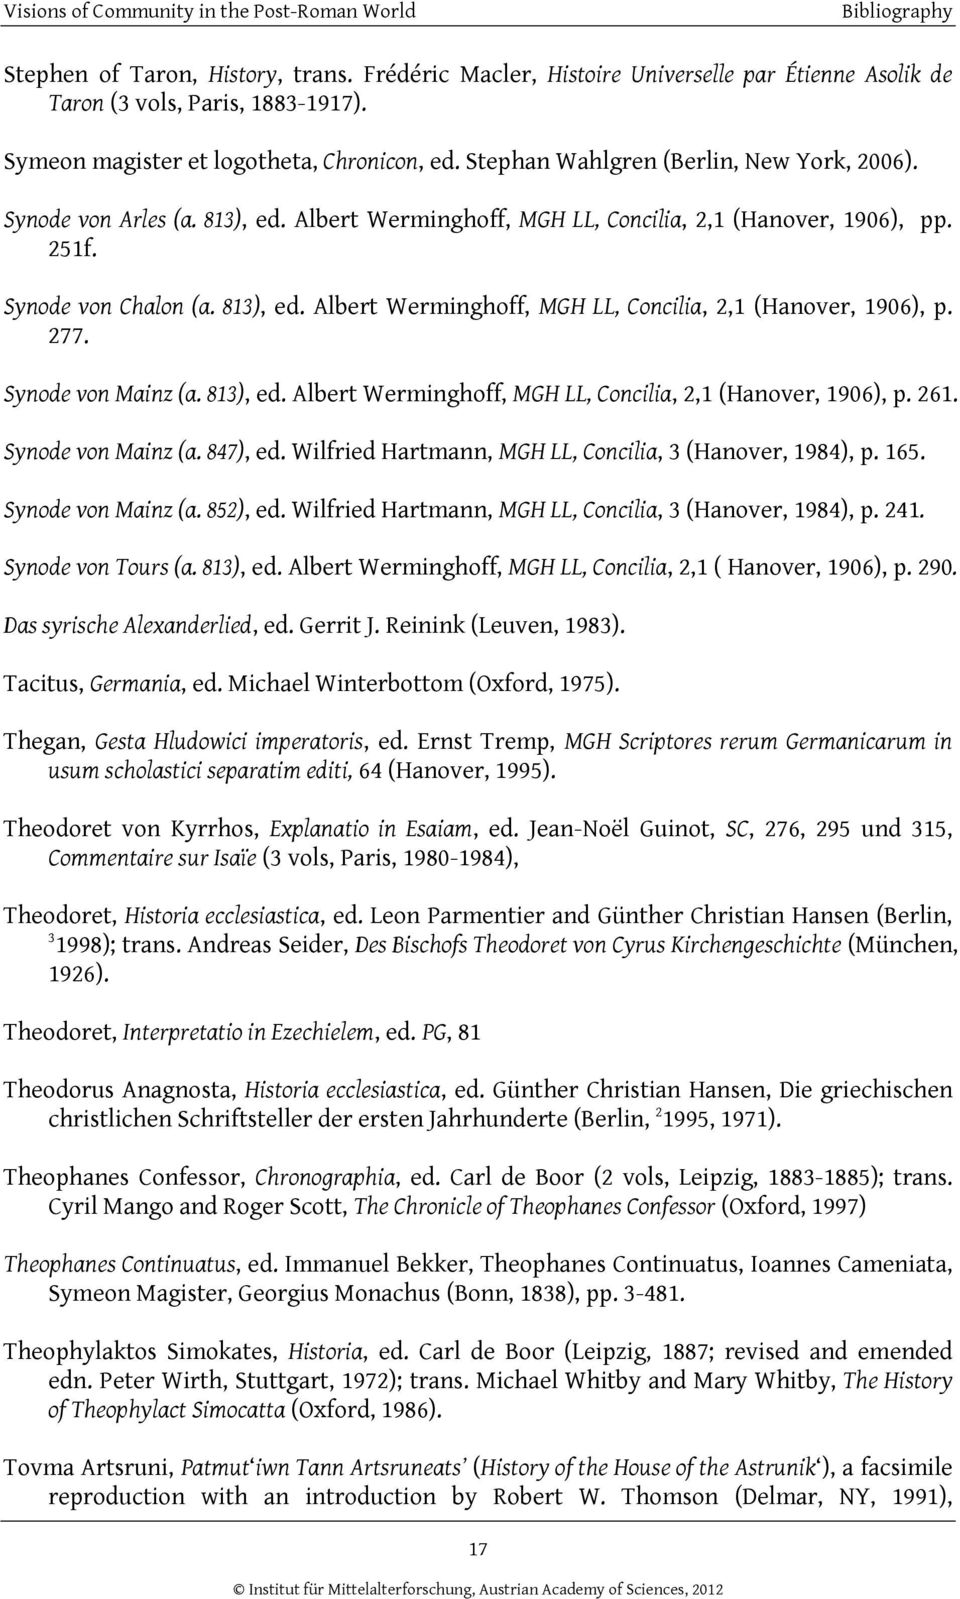 Synode von Mainz (a. 813), ed. Albert Werminghoff, MGH LL, Concilia, 2,1 (Hanover, 1906), p. 261. Synode von Mainz (a. 847), ed. Wilfried Hartmann, MGH LL, Concilia, 3 (Hanover, 1984), p. 165.